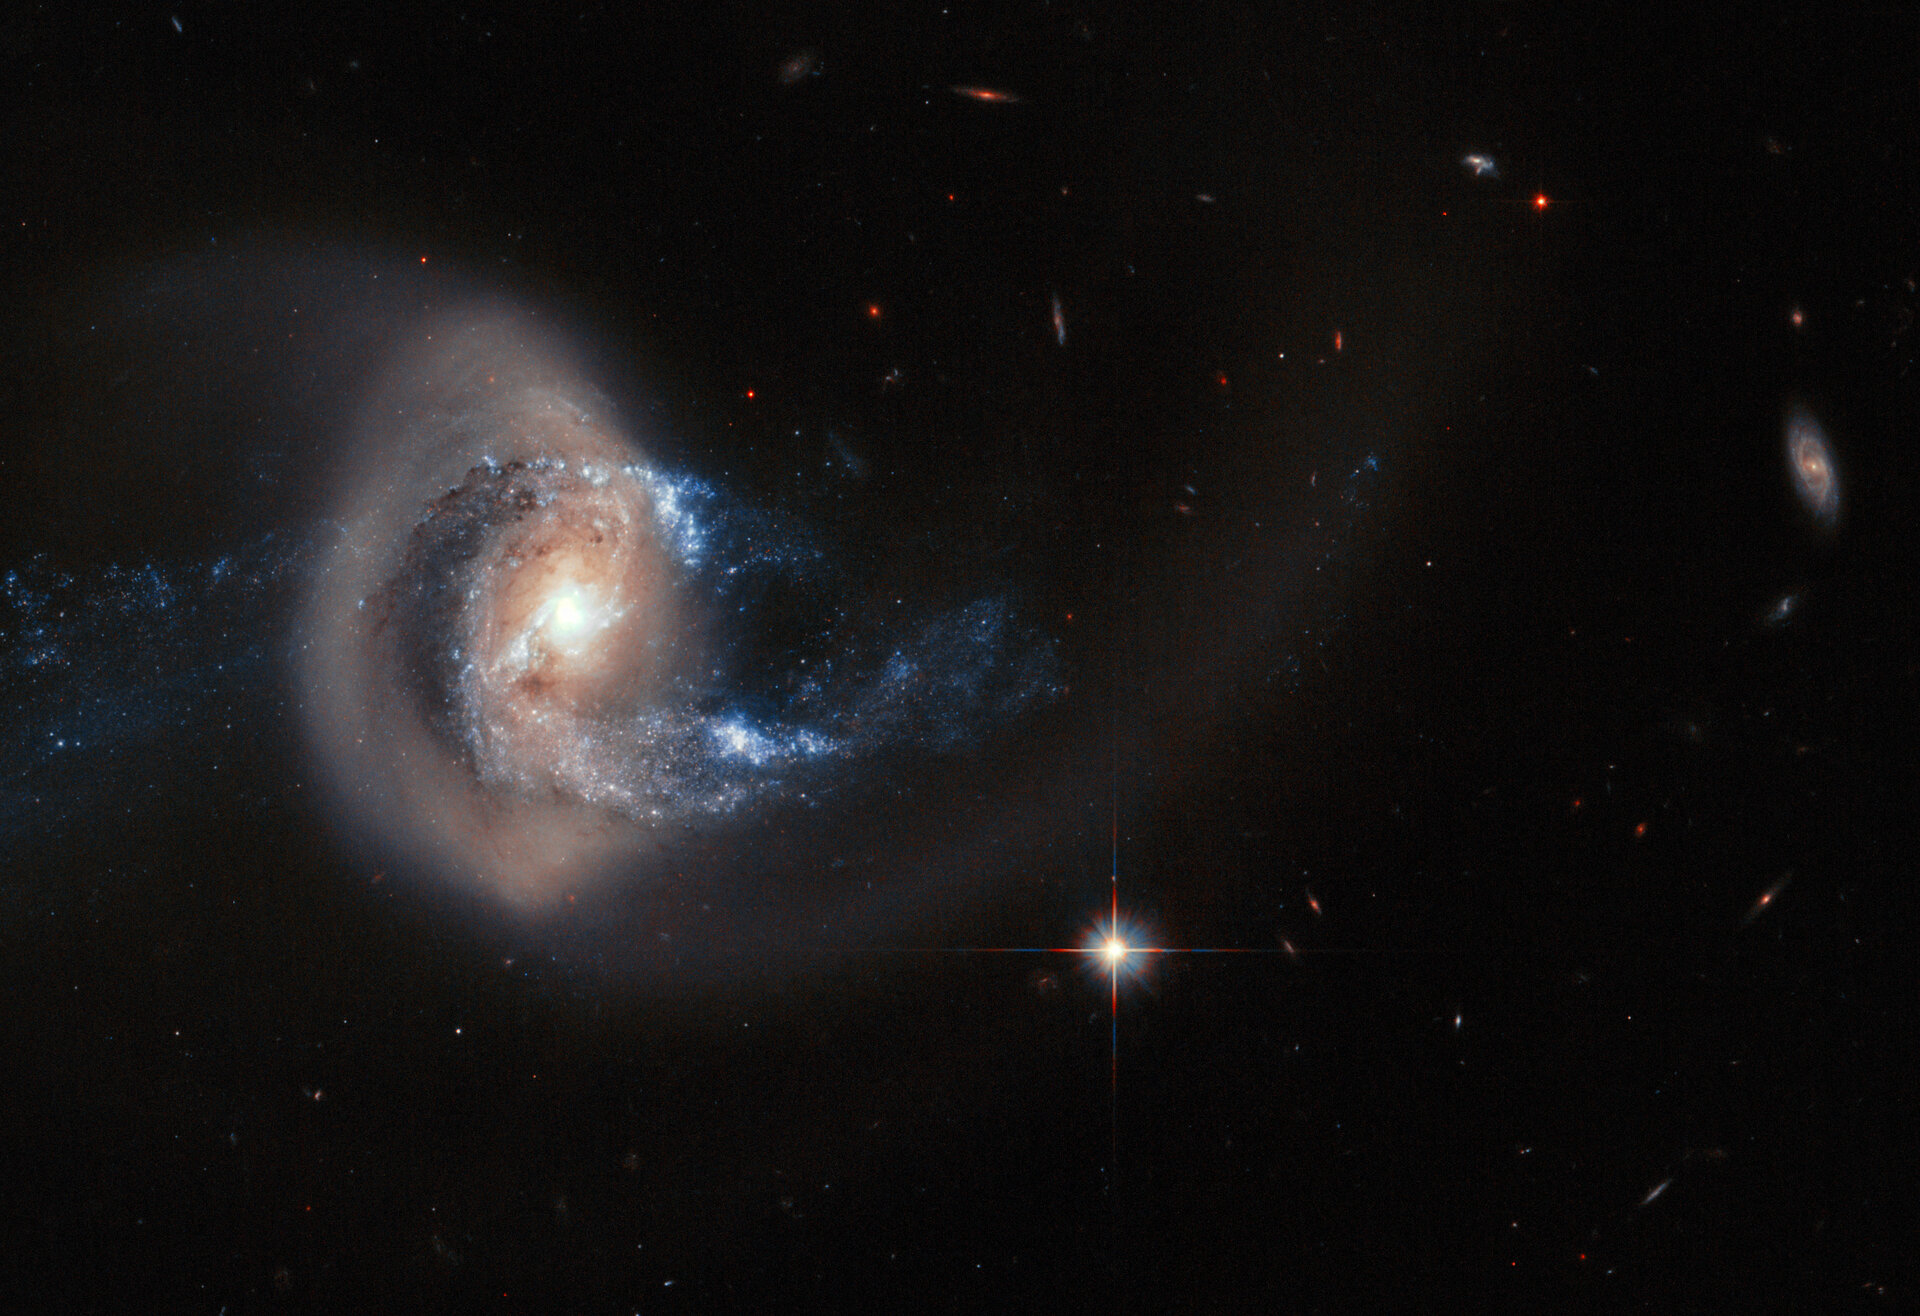 Hubble image of NGC 7714